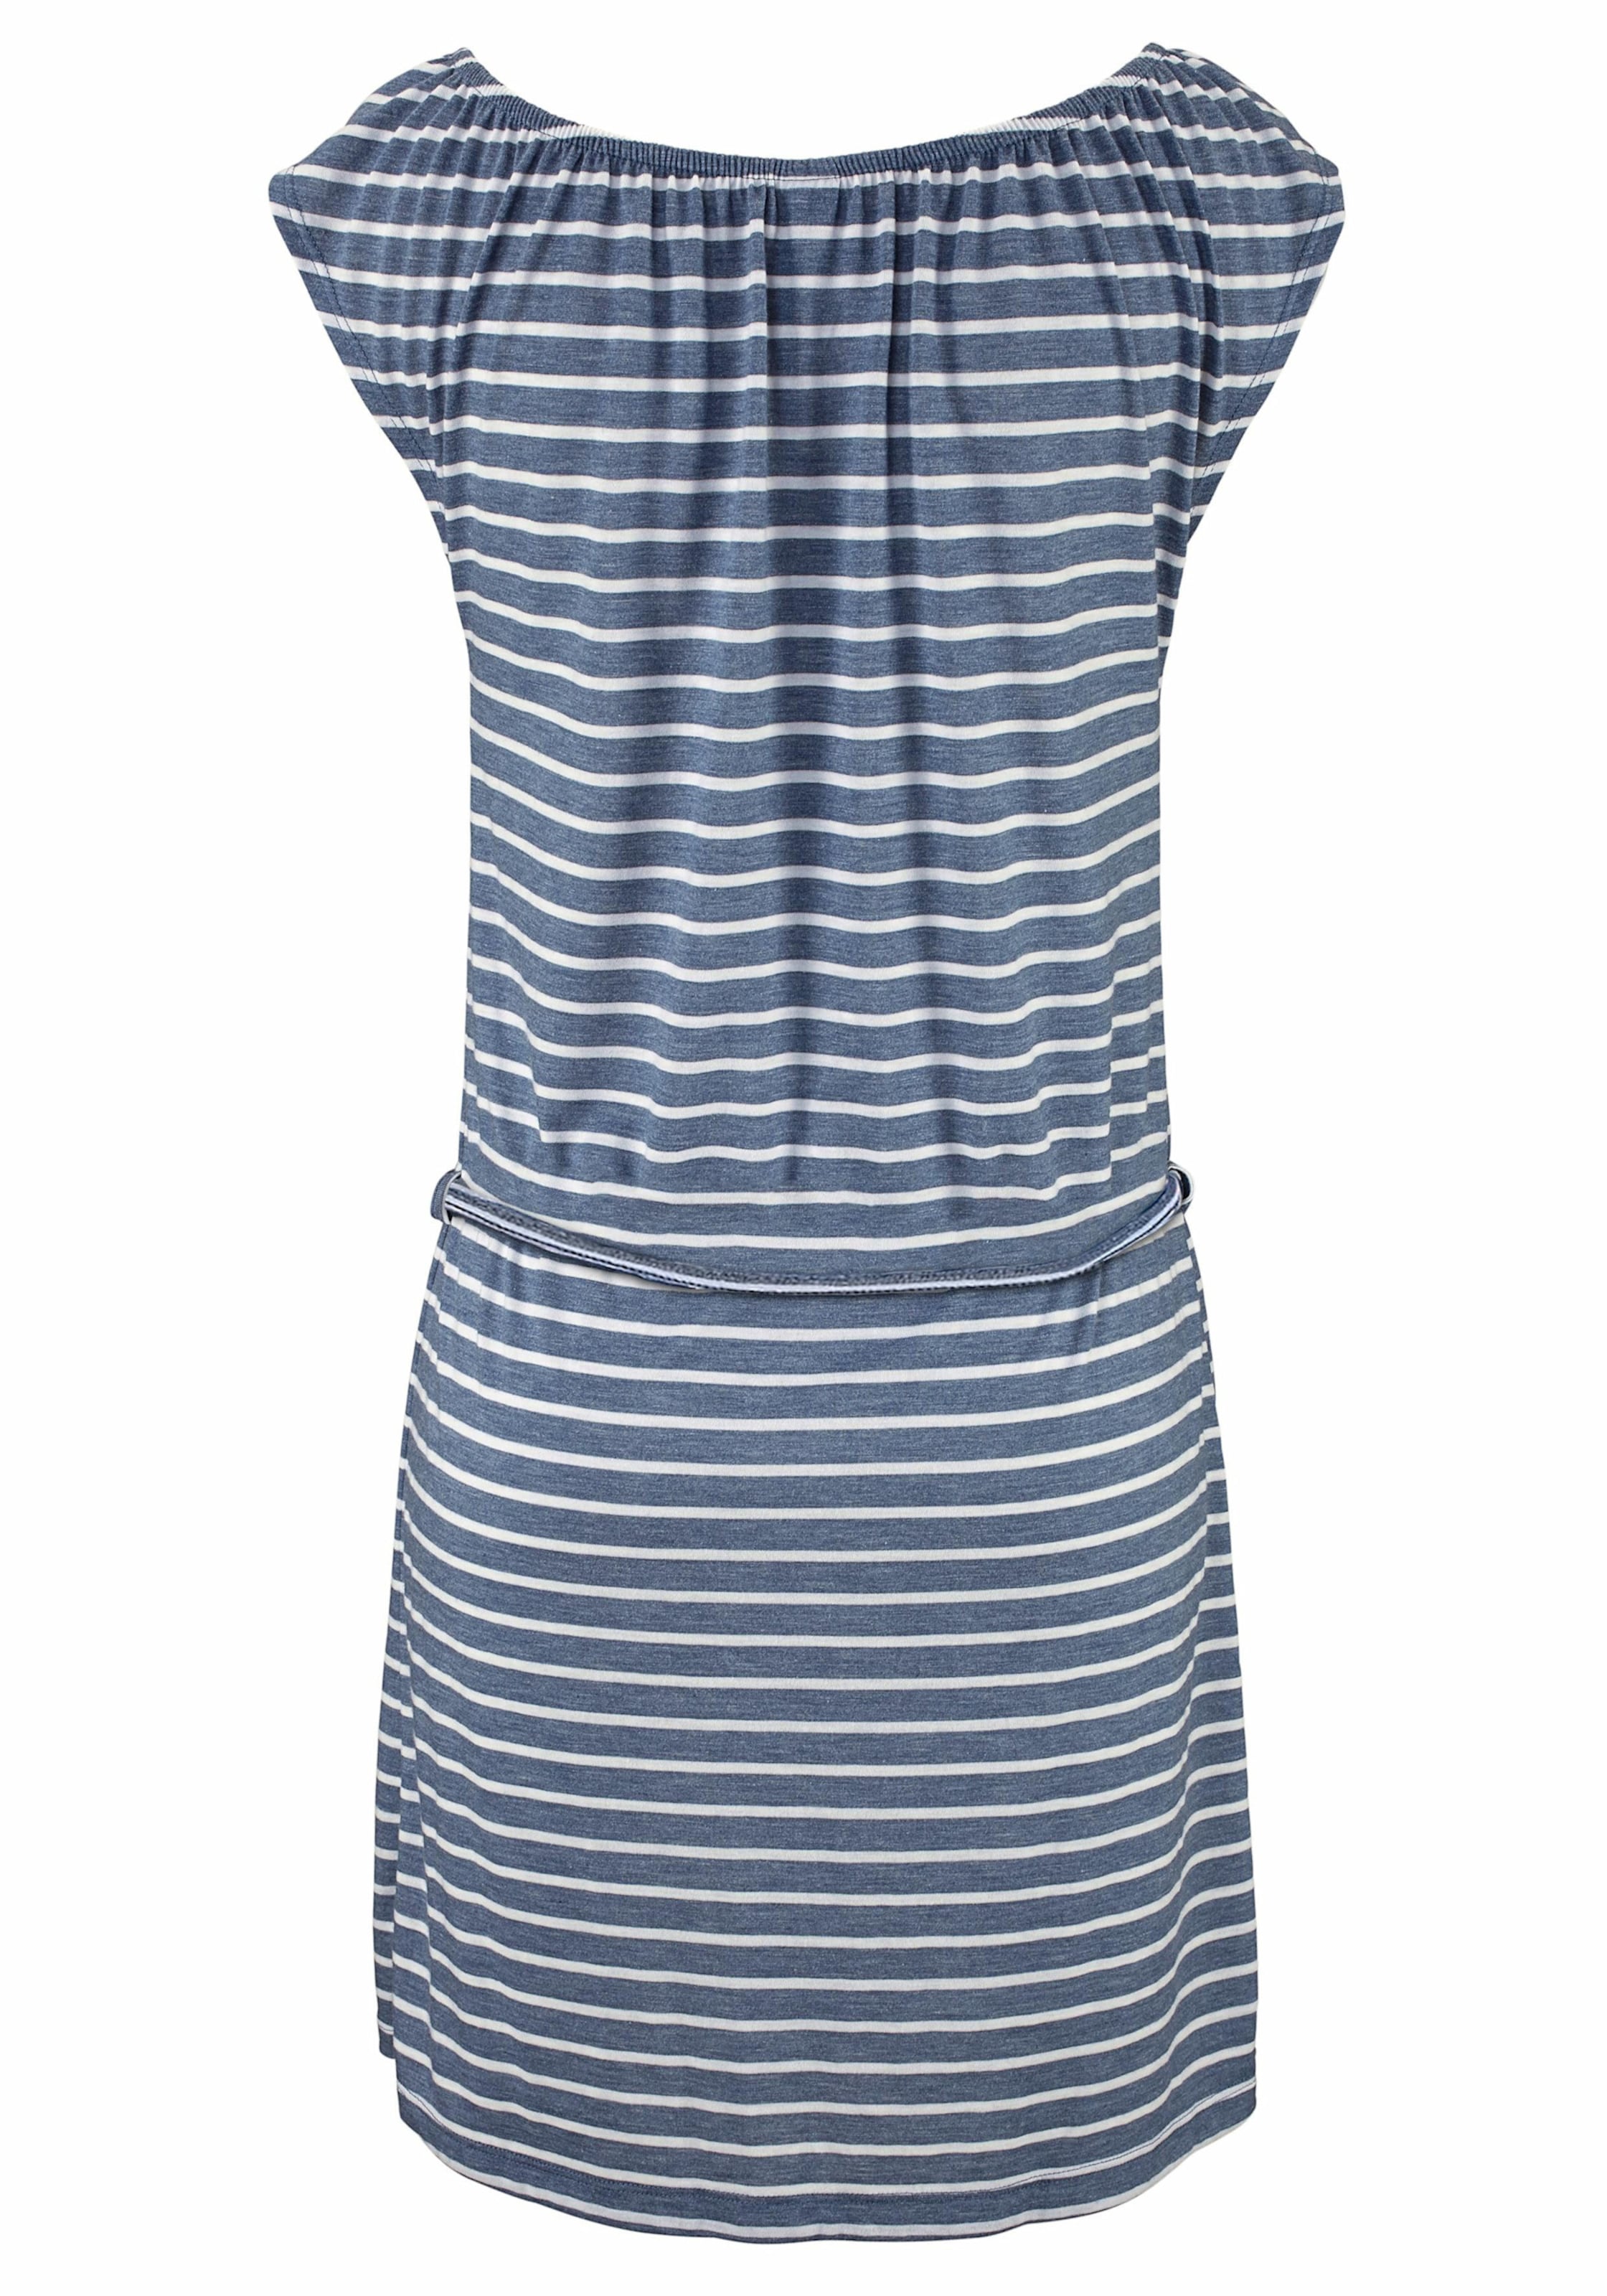 Venice günstig Kaufen-Jerseykleid in blau-weiß-gestreift von Venice Beach. Jerseykleid in blau-weiß-gestreift von Venice Beach <![CDATA[In modischer Streifenoptik. Bindebänder am Ausschnitt. Mit Gürtel. Rückenlänge ca. 86 cm. Supersofte Qualität aus 85% Polyeste